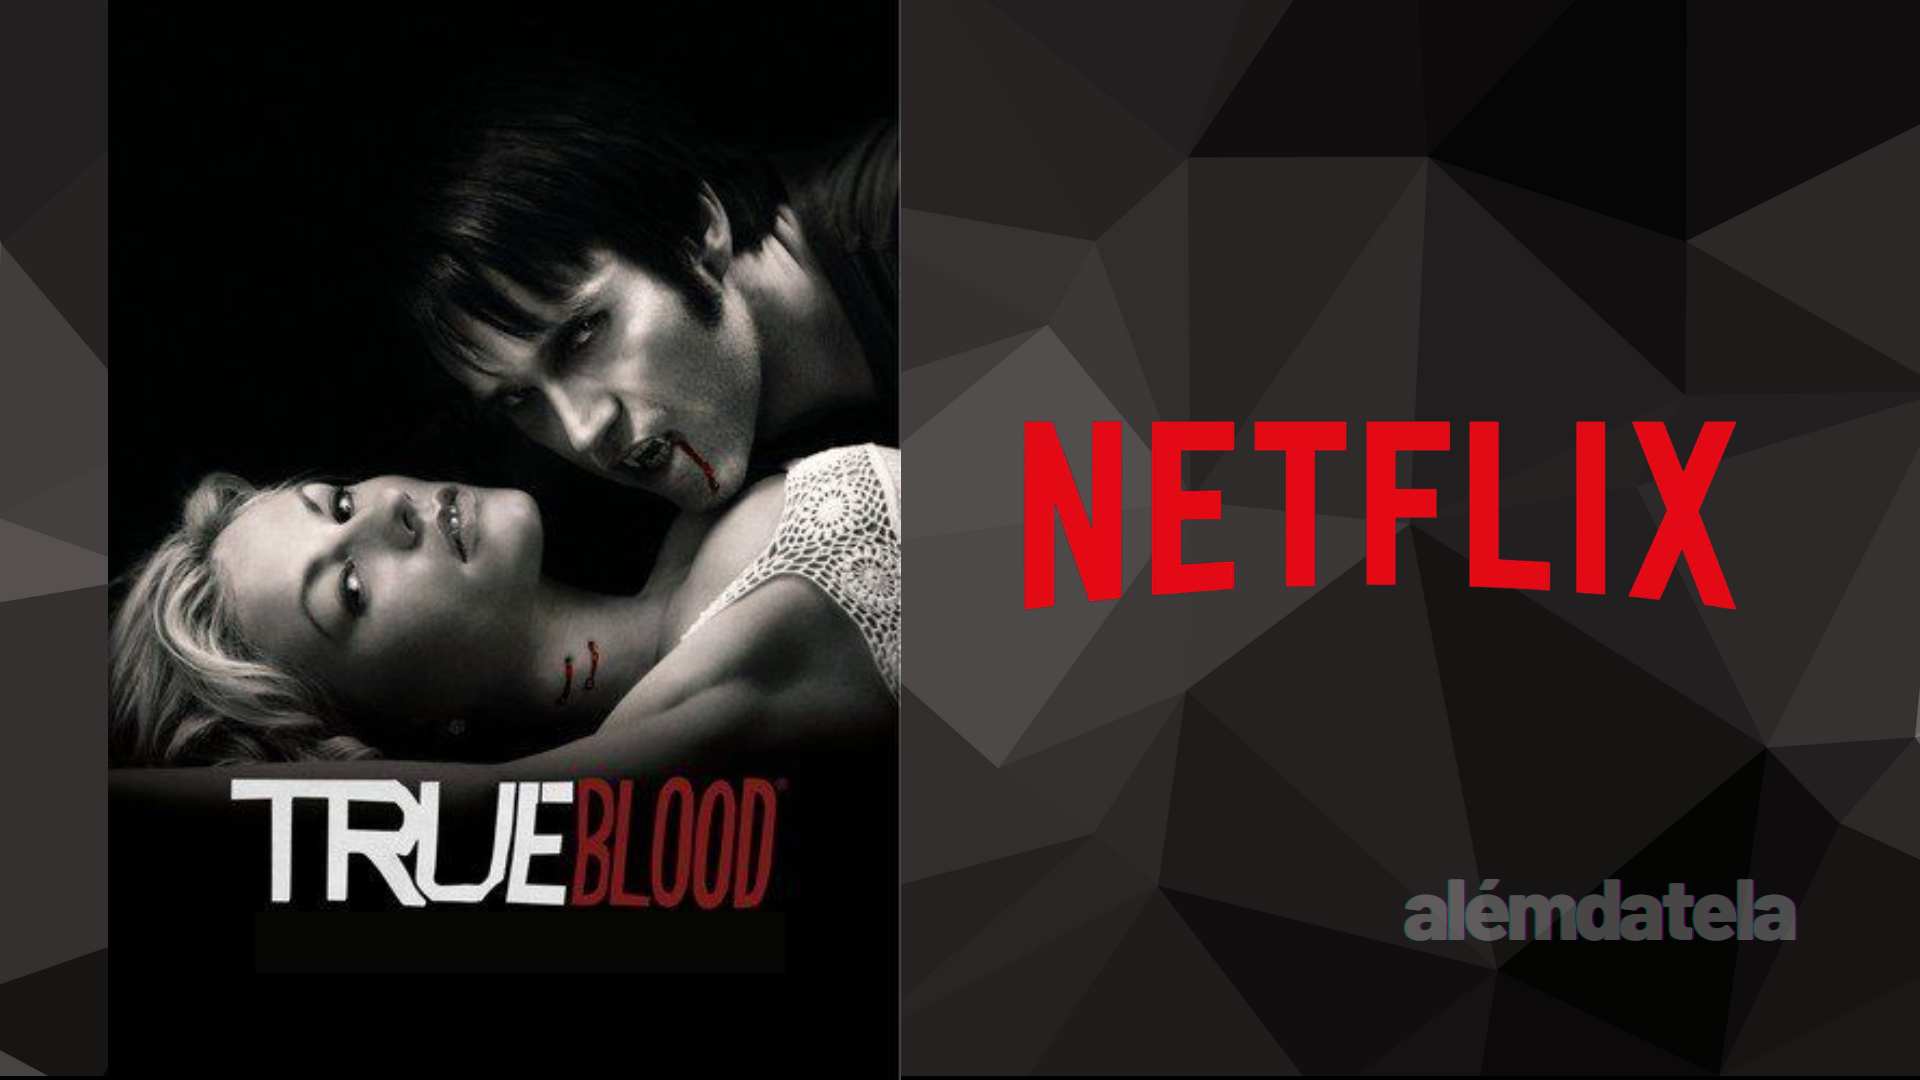 True Blood série ORIGINAL da HBO chega a Netflix - Notícias TV